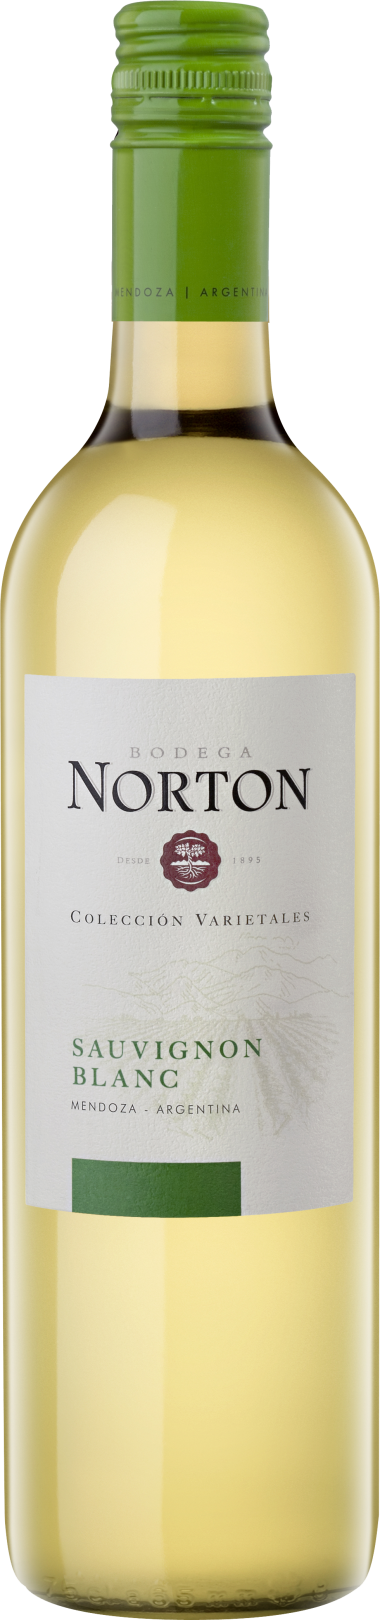 Bodega Norton Sauvignon Blanc Colección